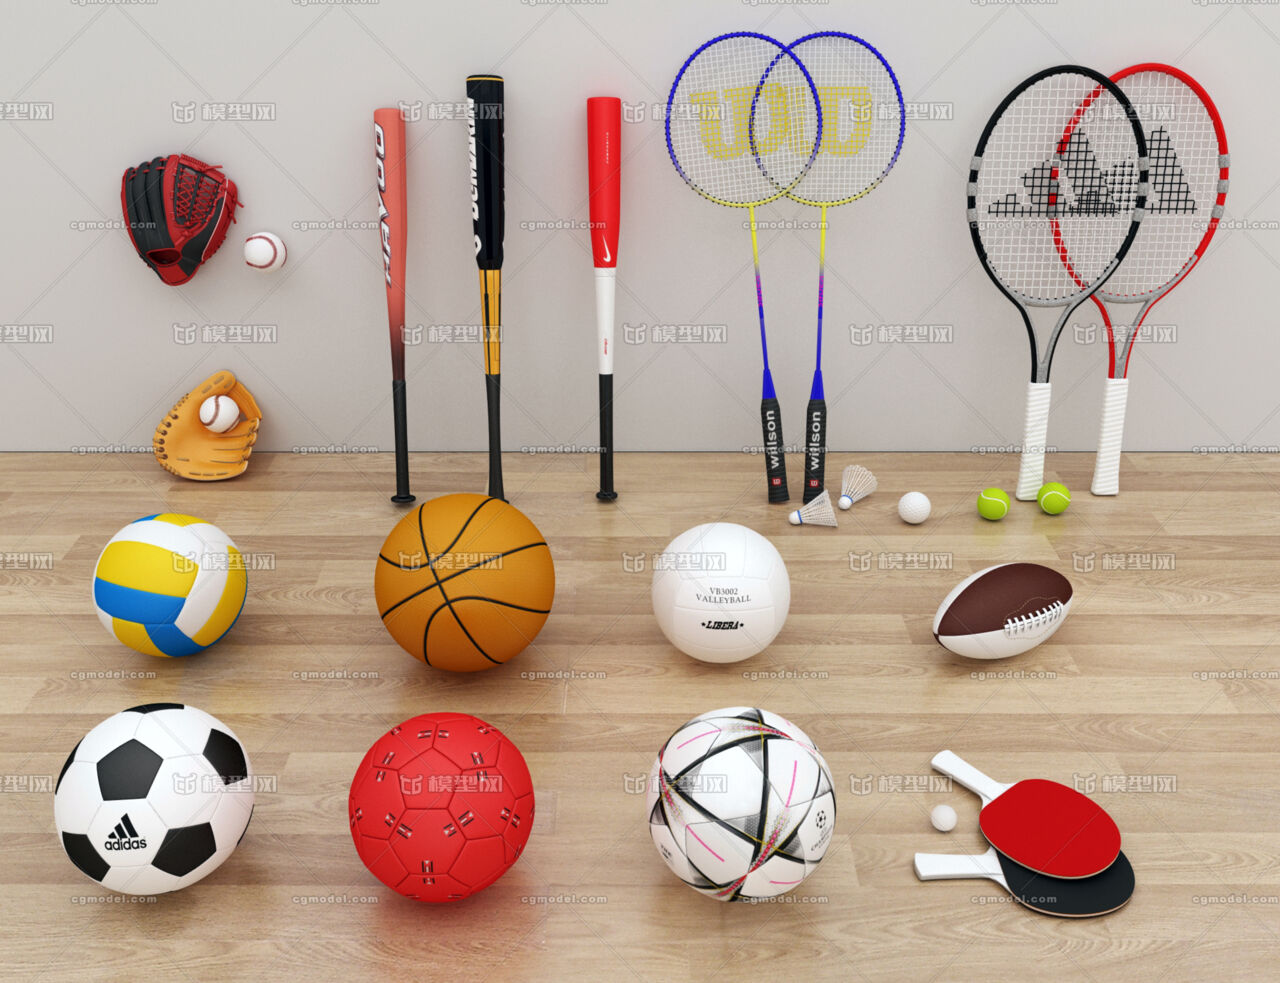 前10月温州体育娱乐用品类商品零售额涨幅57.3%